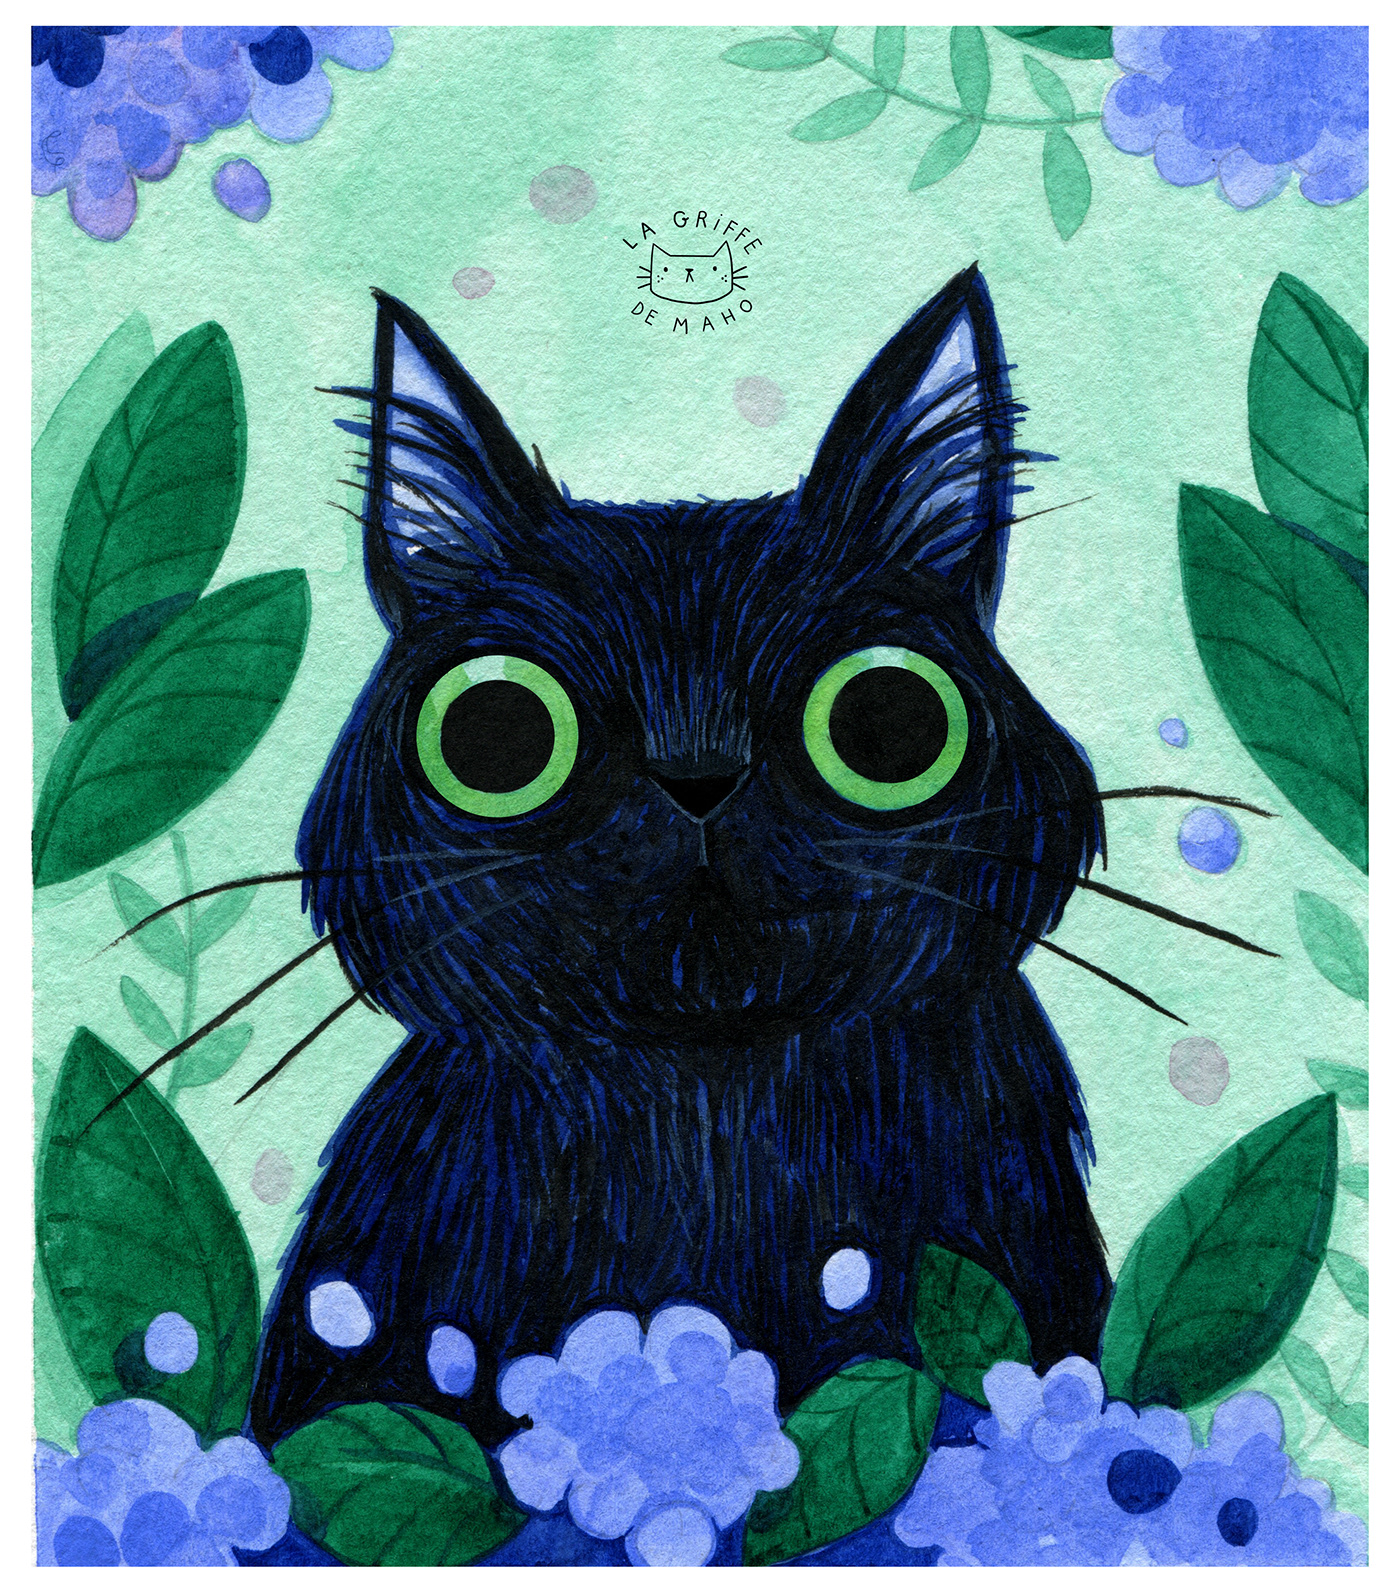 Cat cat illustration children illustration ILLUSTRATION  illustration artist kitty la griffe de maho lagriffedemaho owl kitty owlkitty